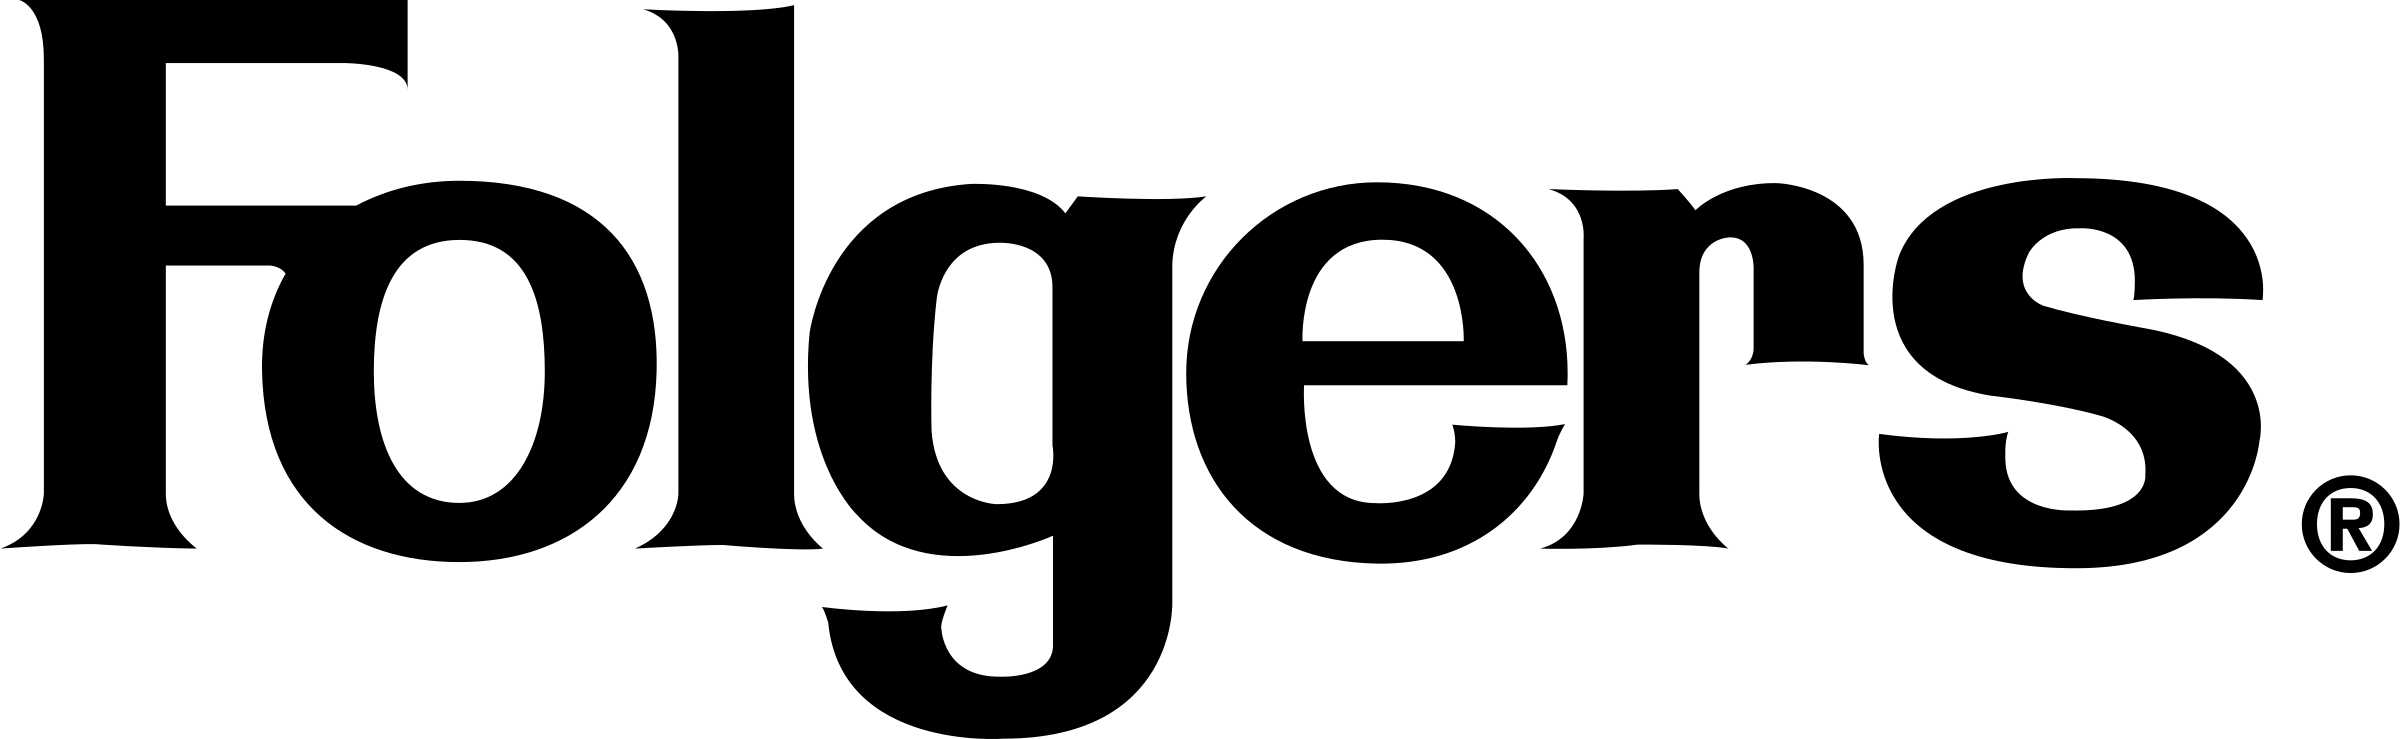 Folgers Logo - Folgers Logo PNG Transparent & SVG Vector - Freebie Supply